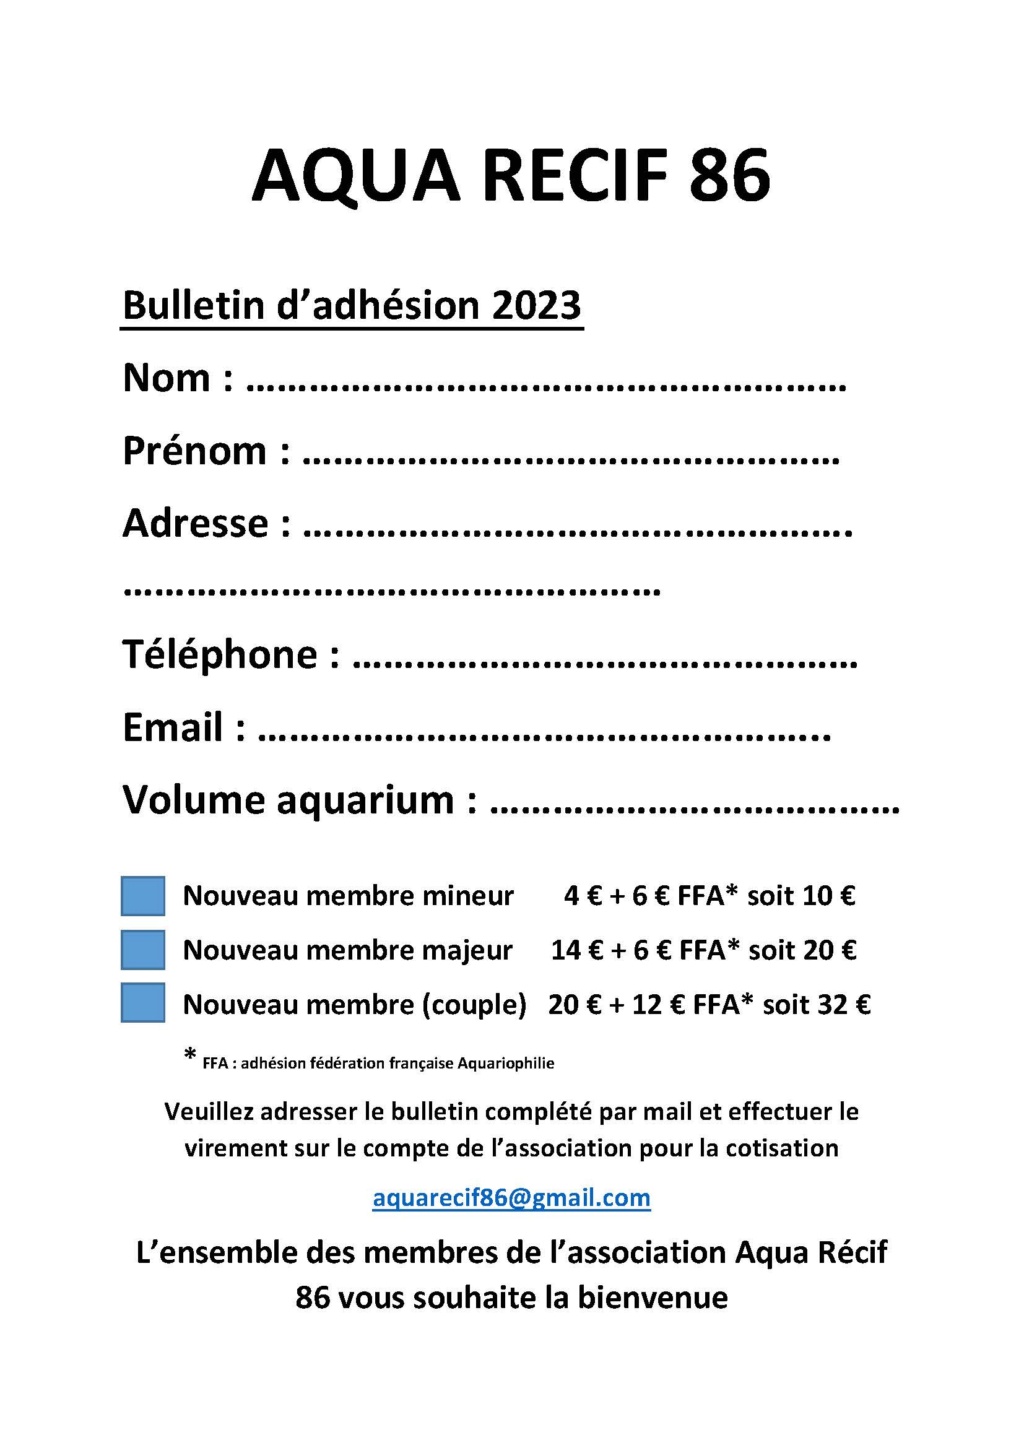 Bulletin d' Adhésion 2023 AQUARECIF86 Adhesi10